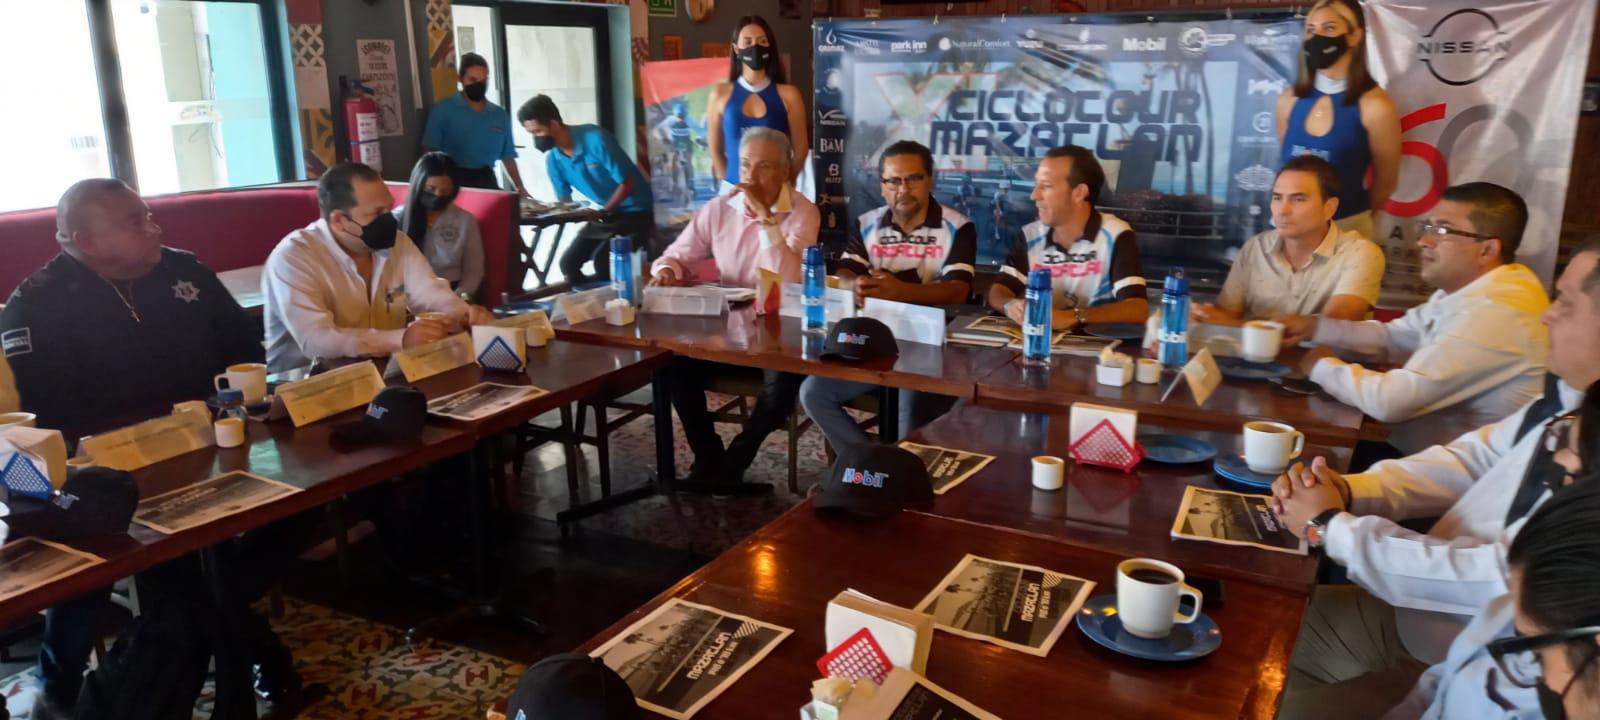 $!Ciclotour Mazatlán 2021 regresa recargado y con una gran novedad